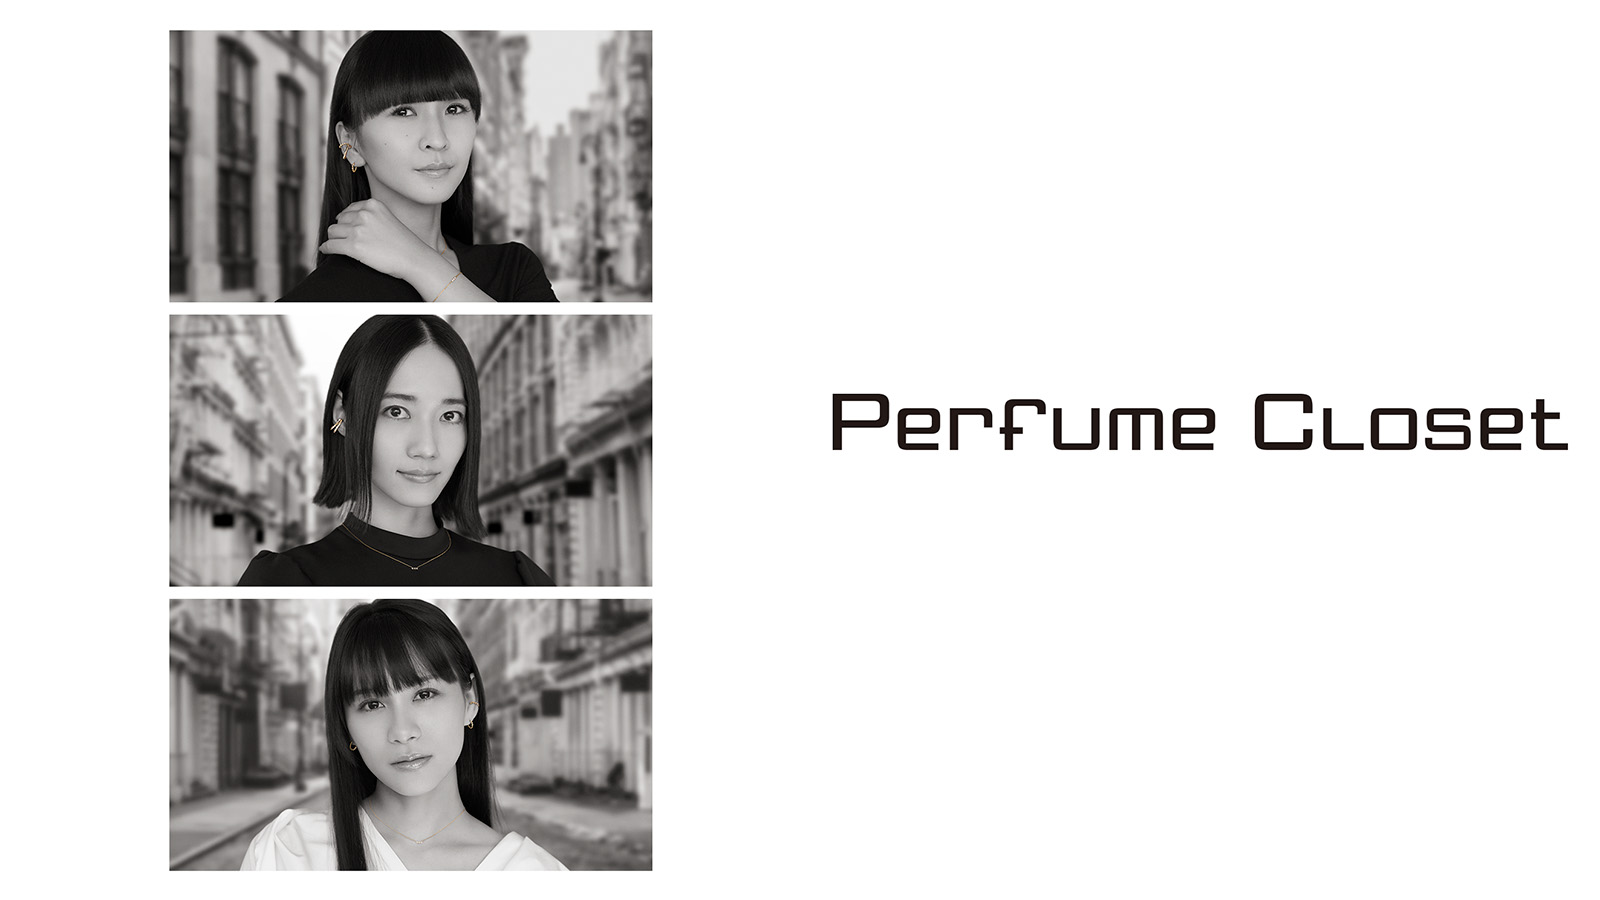 「Perfume Closet」第6弾【Phase1】アイテムとしてジュエリーのラインナップが登場！
7都市9会場で開催となる期間限定ポップアップショップの詳細も明らかに！